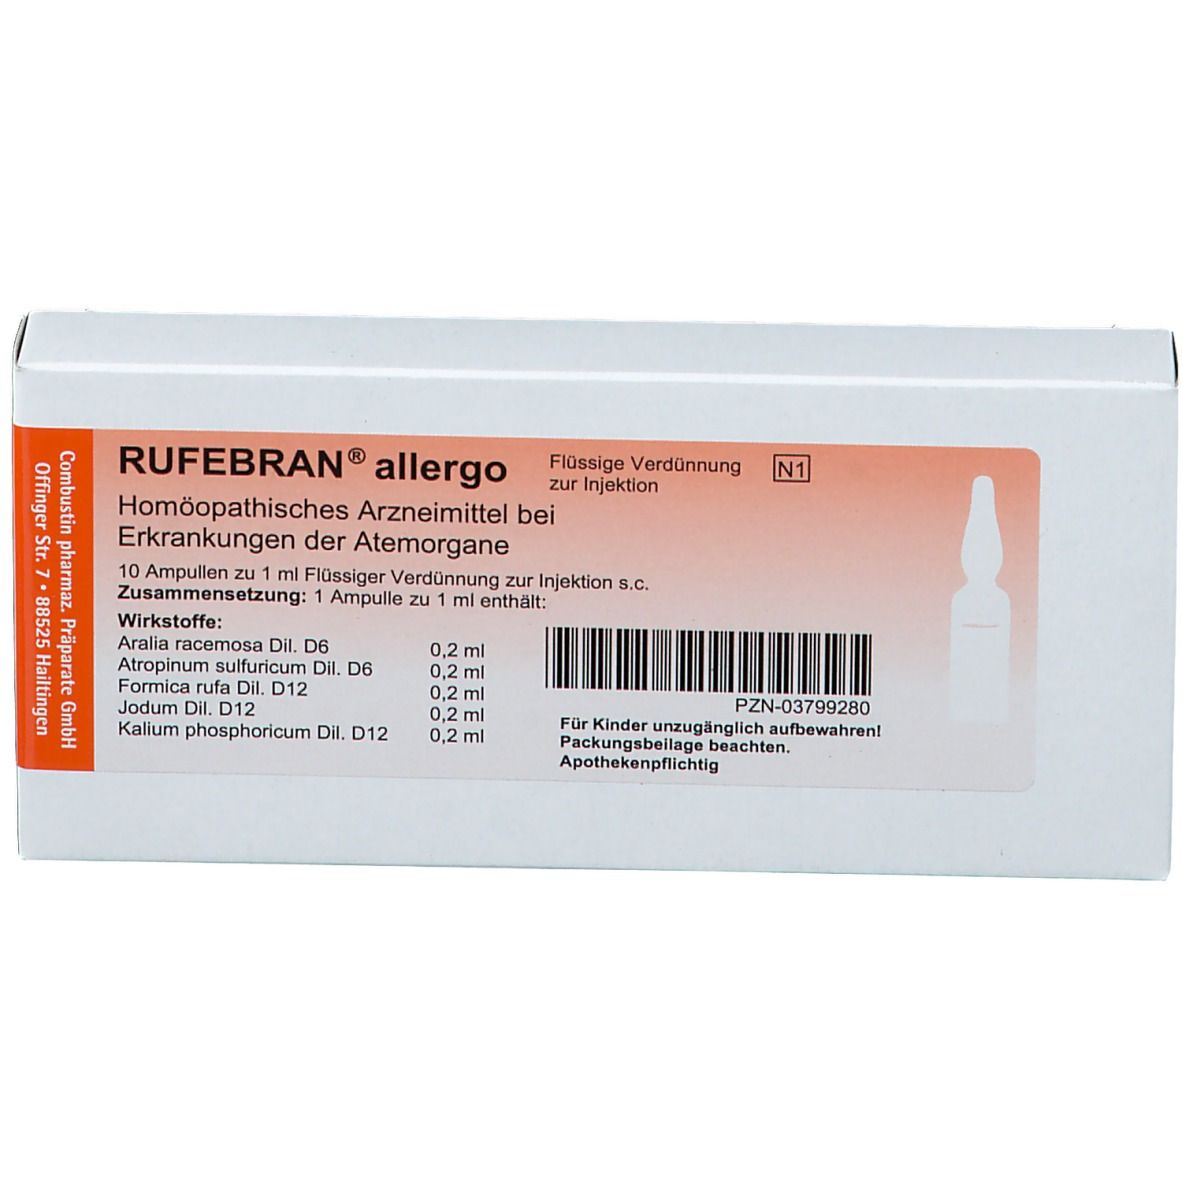 RUFEBRAN® allergo Ampullen